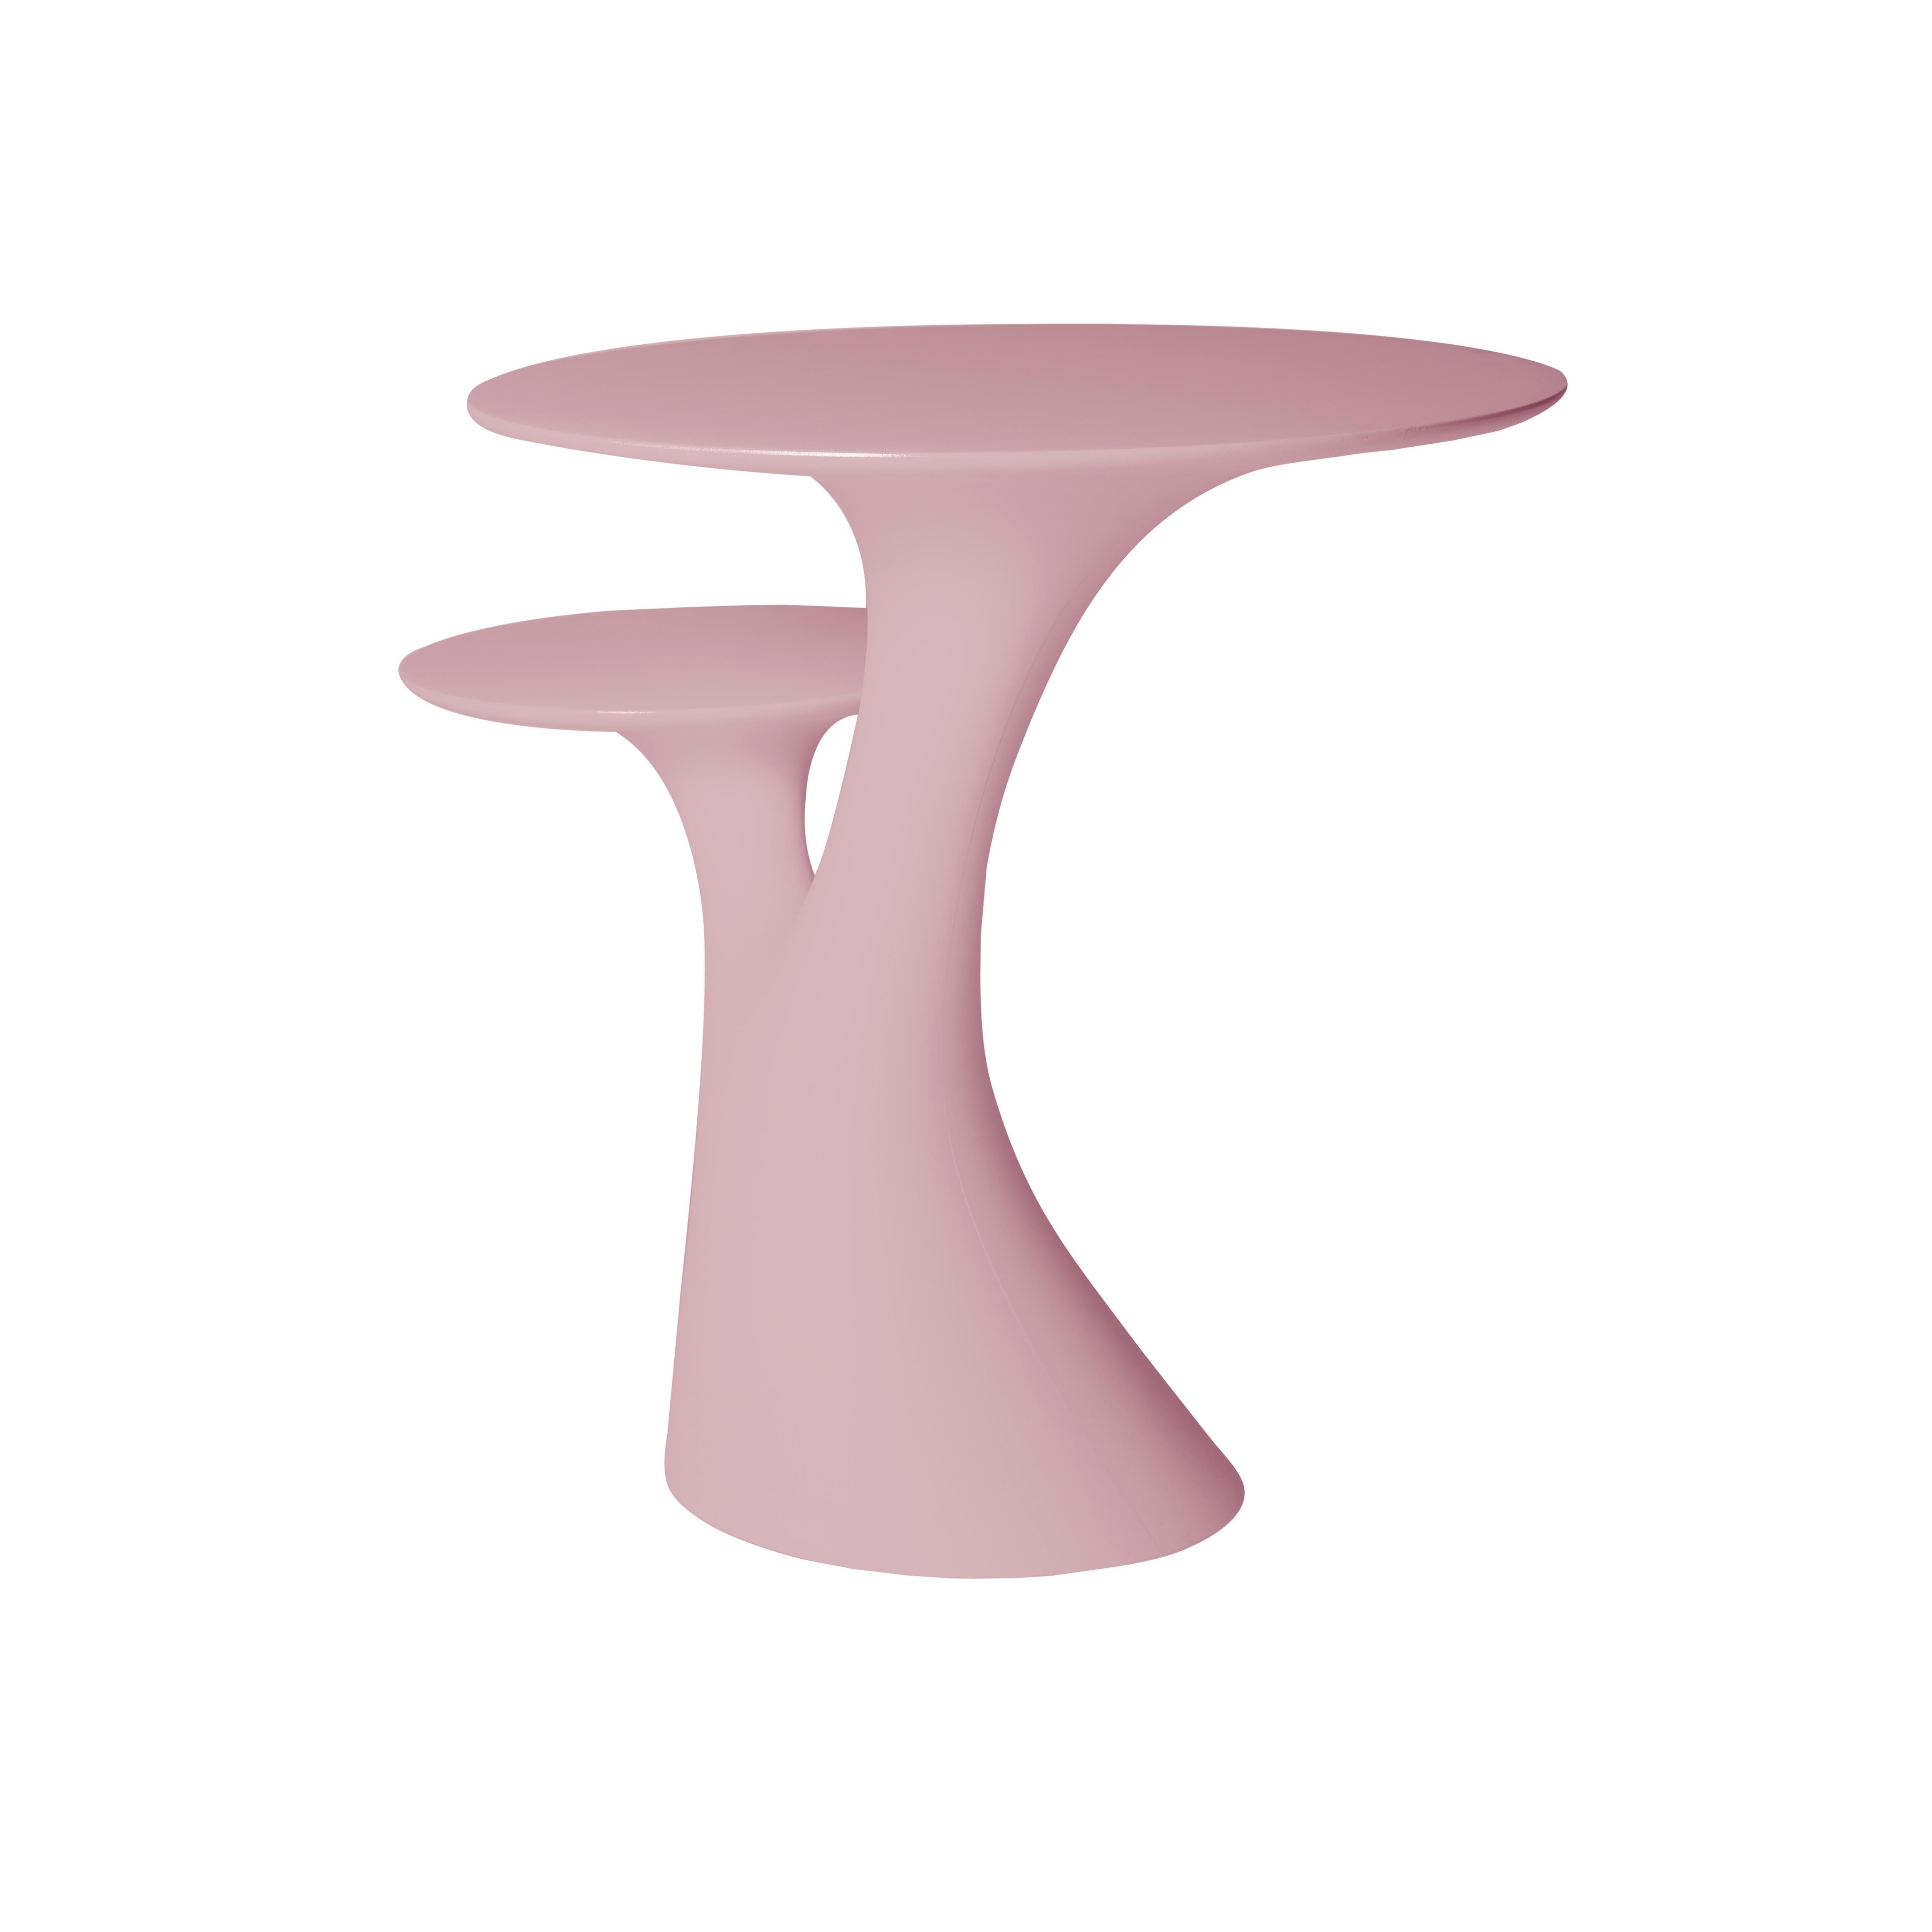 En vente : Pink Table d'appoint moderne en plastique blanc, gris, vert, rose ou en forme d'arbre par Stefano Giovannoni